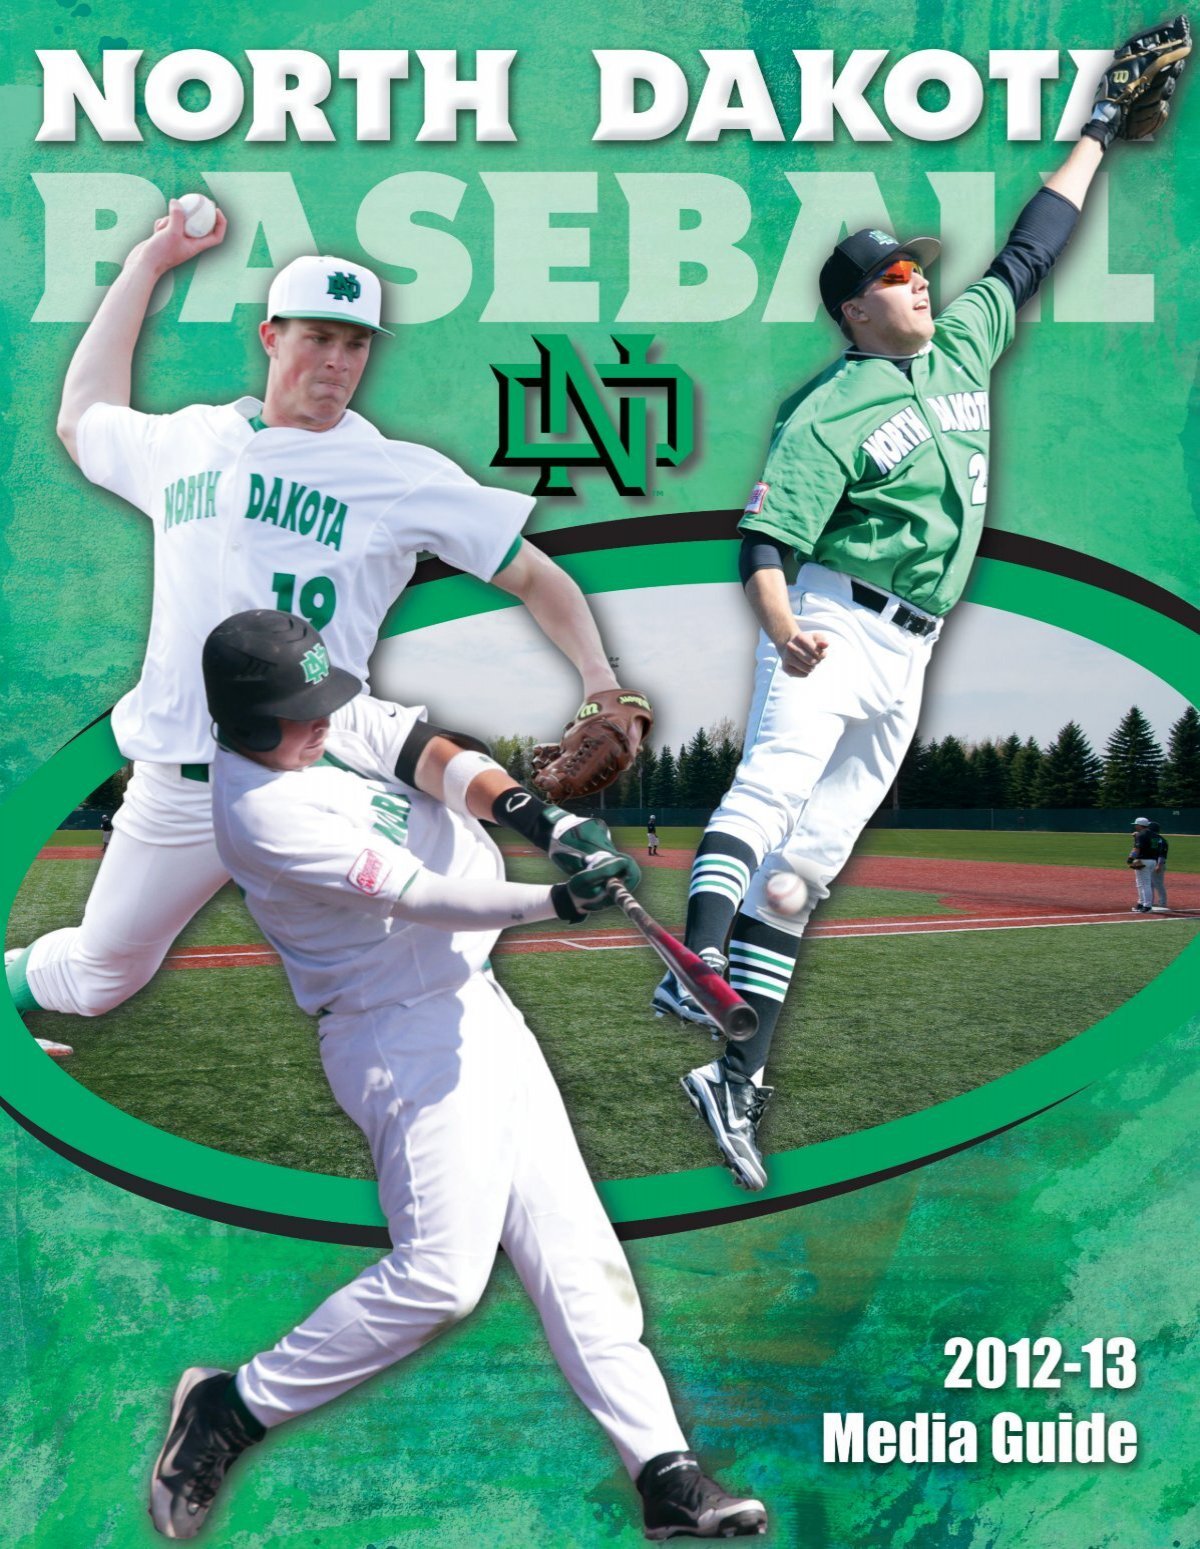 2013 University of Notre Dame Baseball Media Guide by Chris